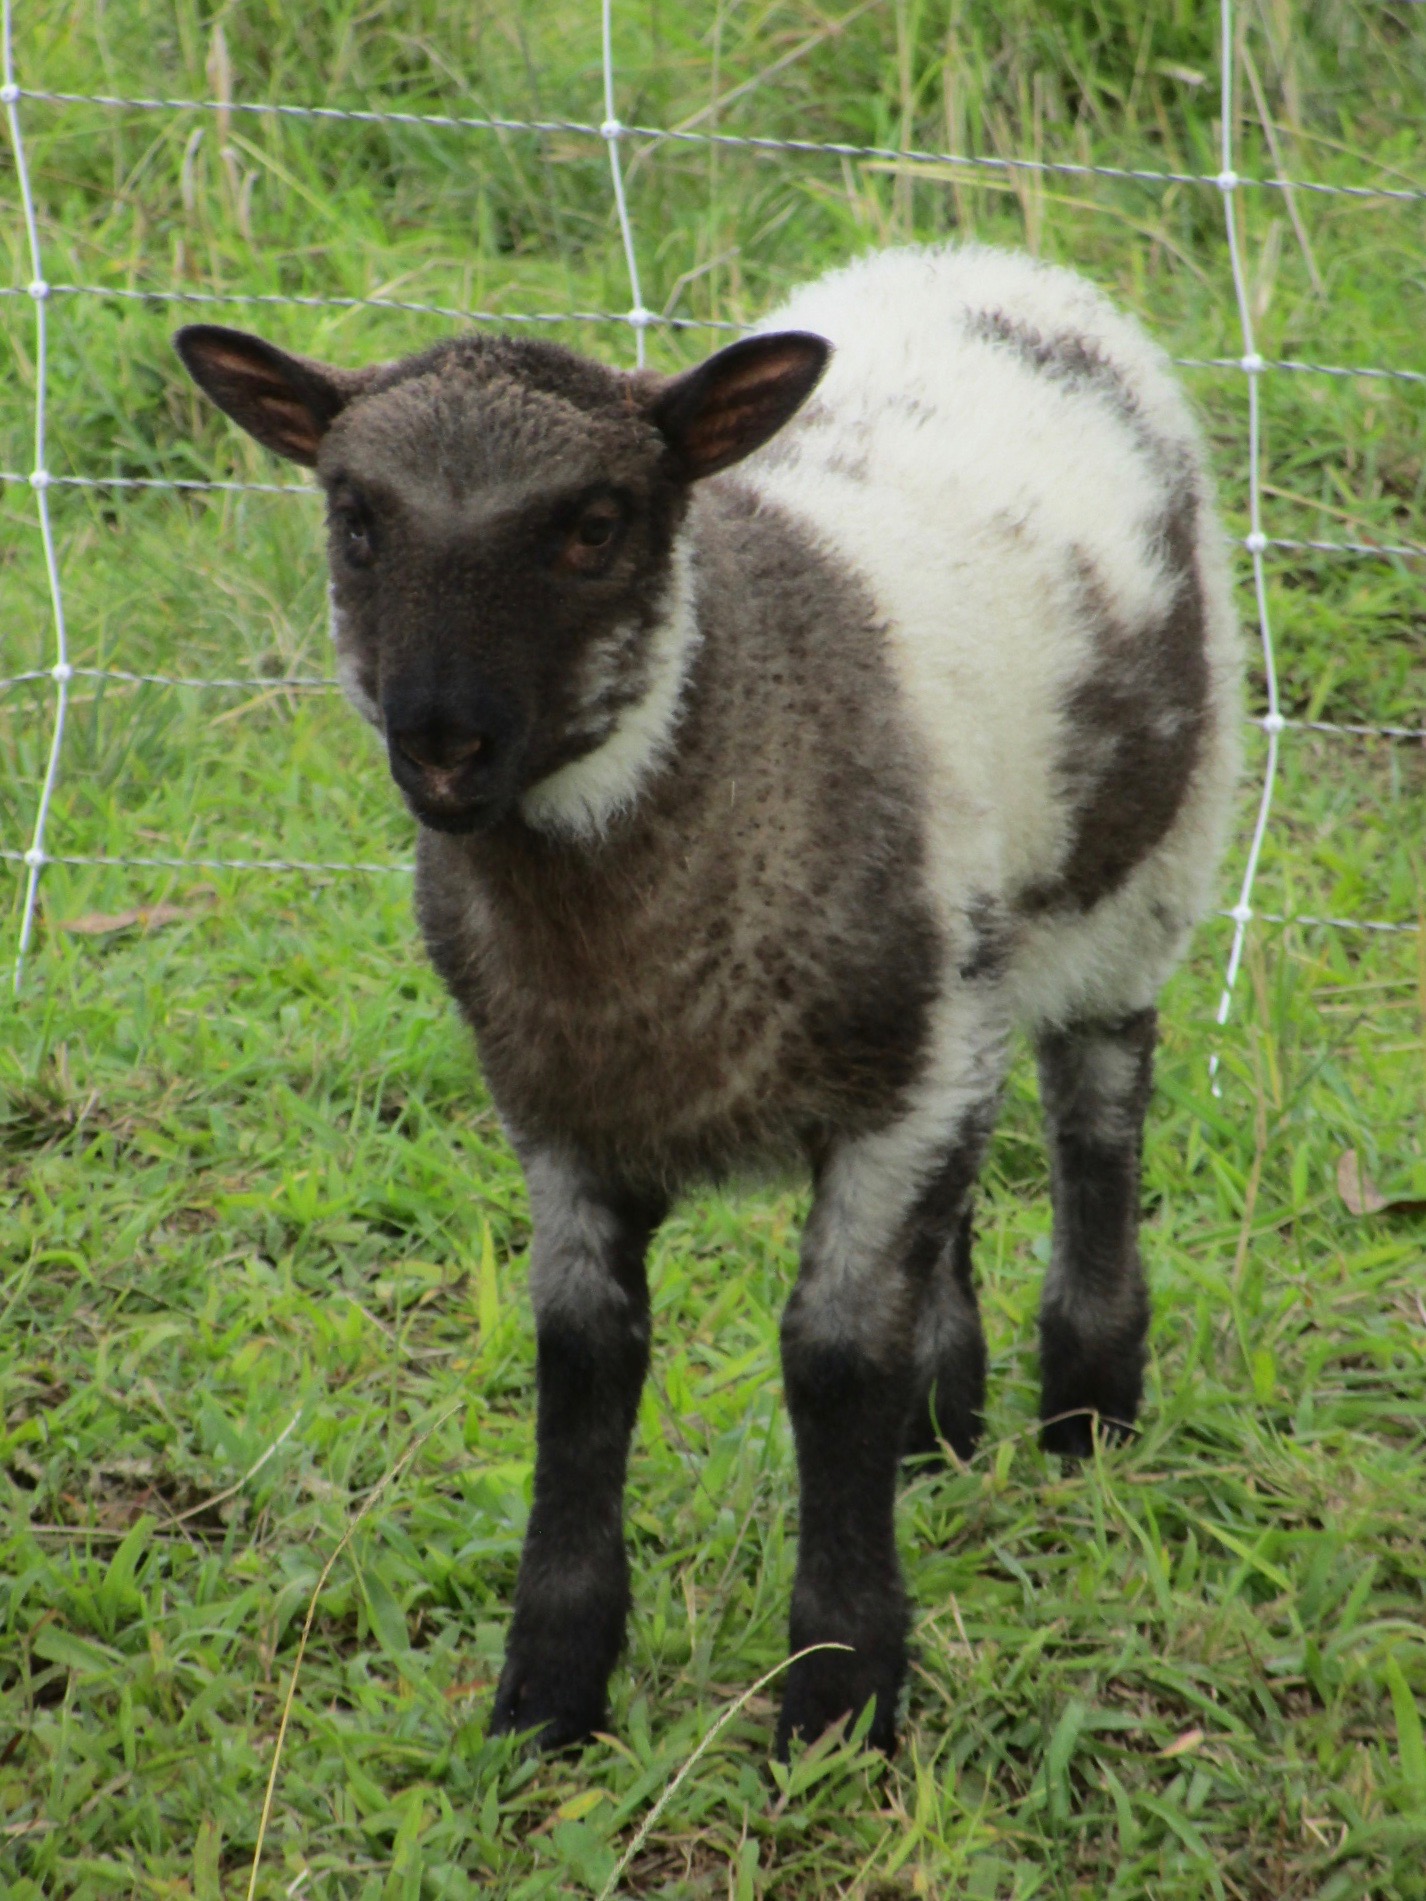 June's ewe